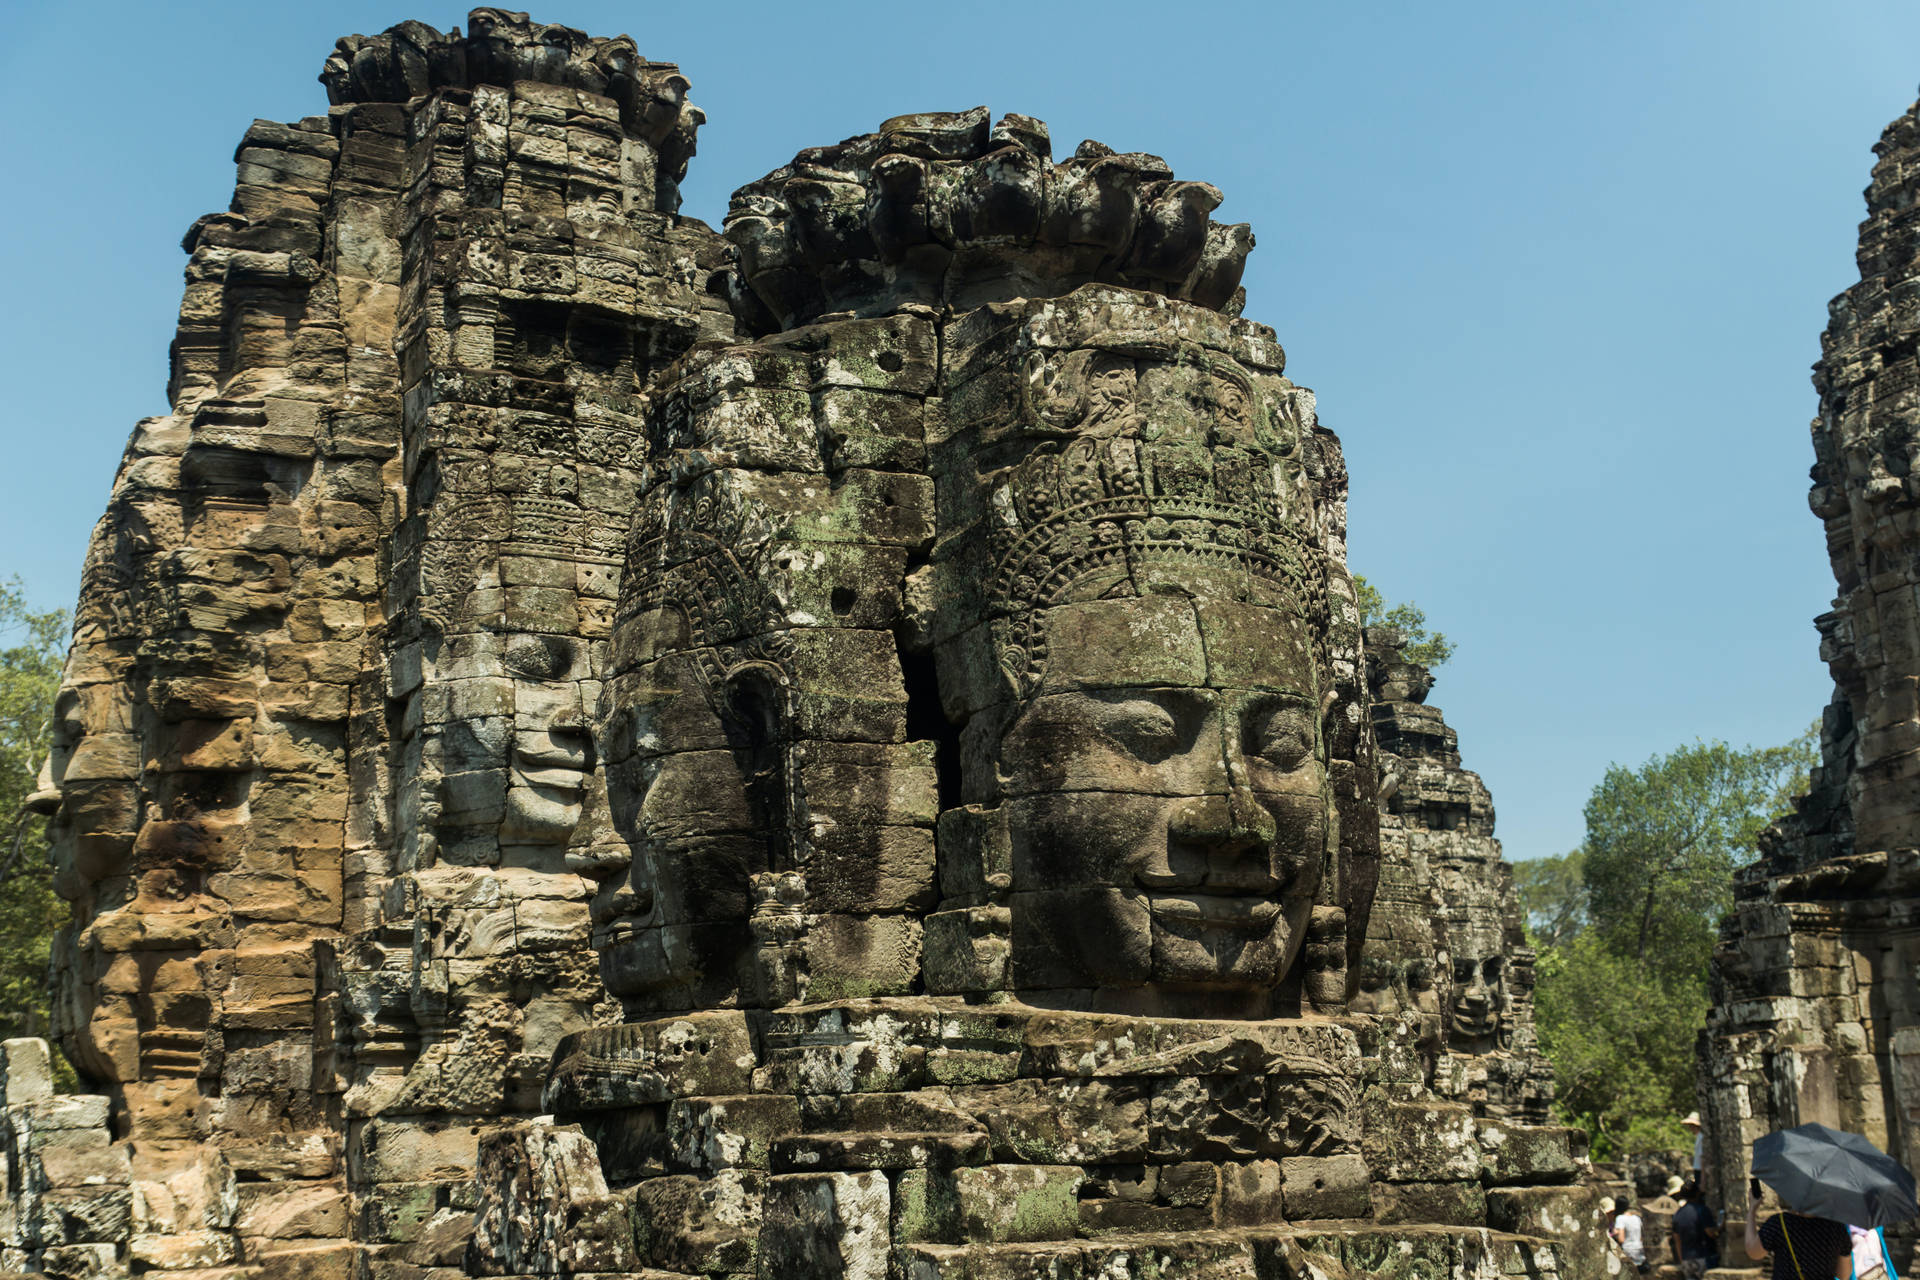 Jätteansiktenai Statyerna I Angkor Wat, Kambodja. Wallpaper